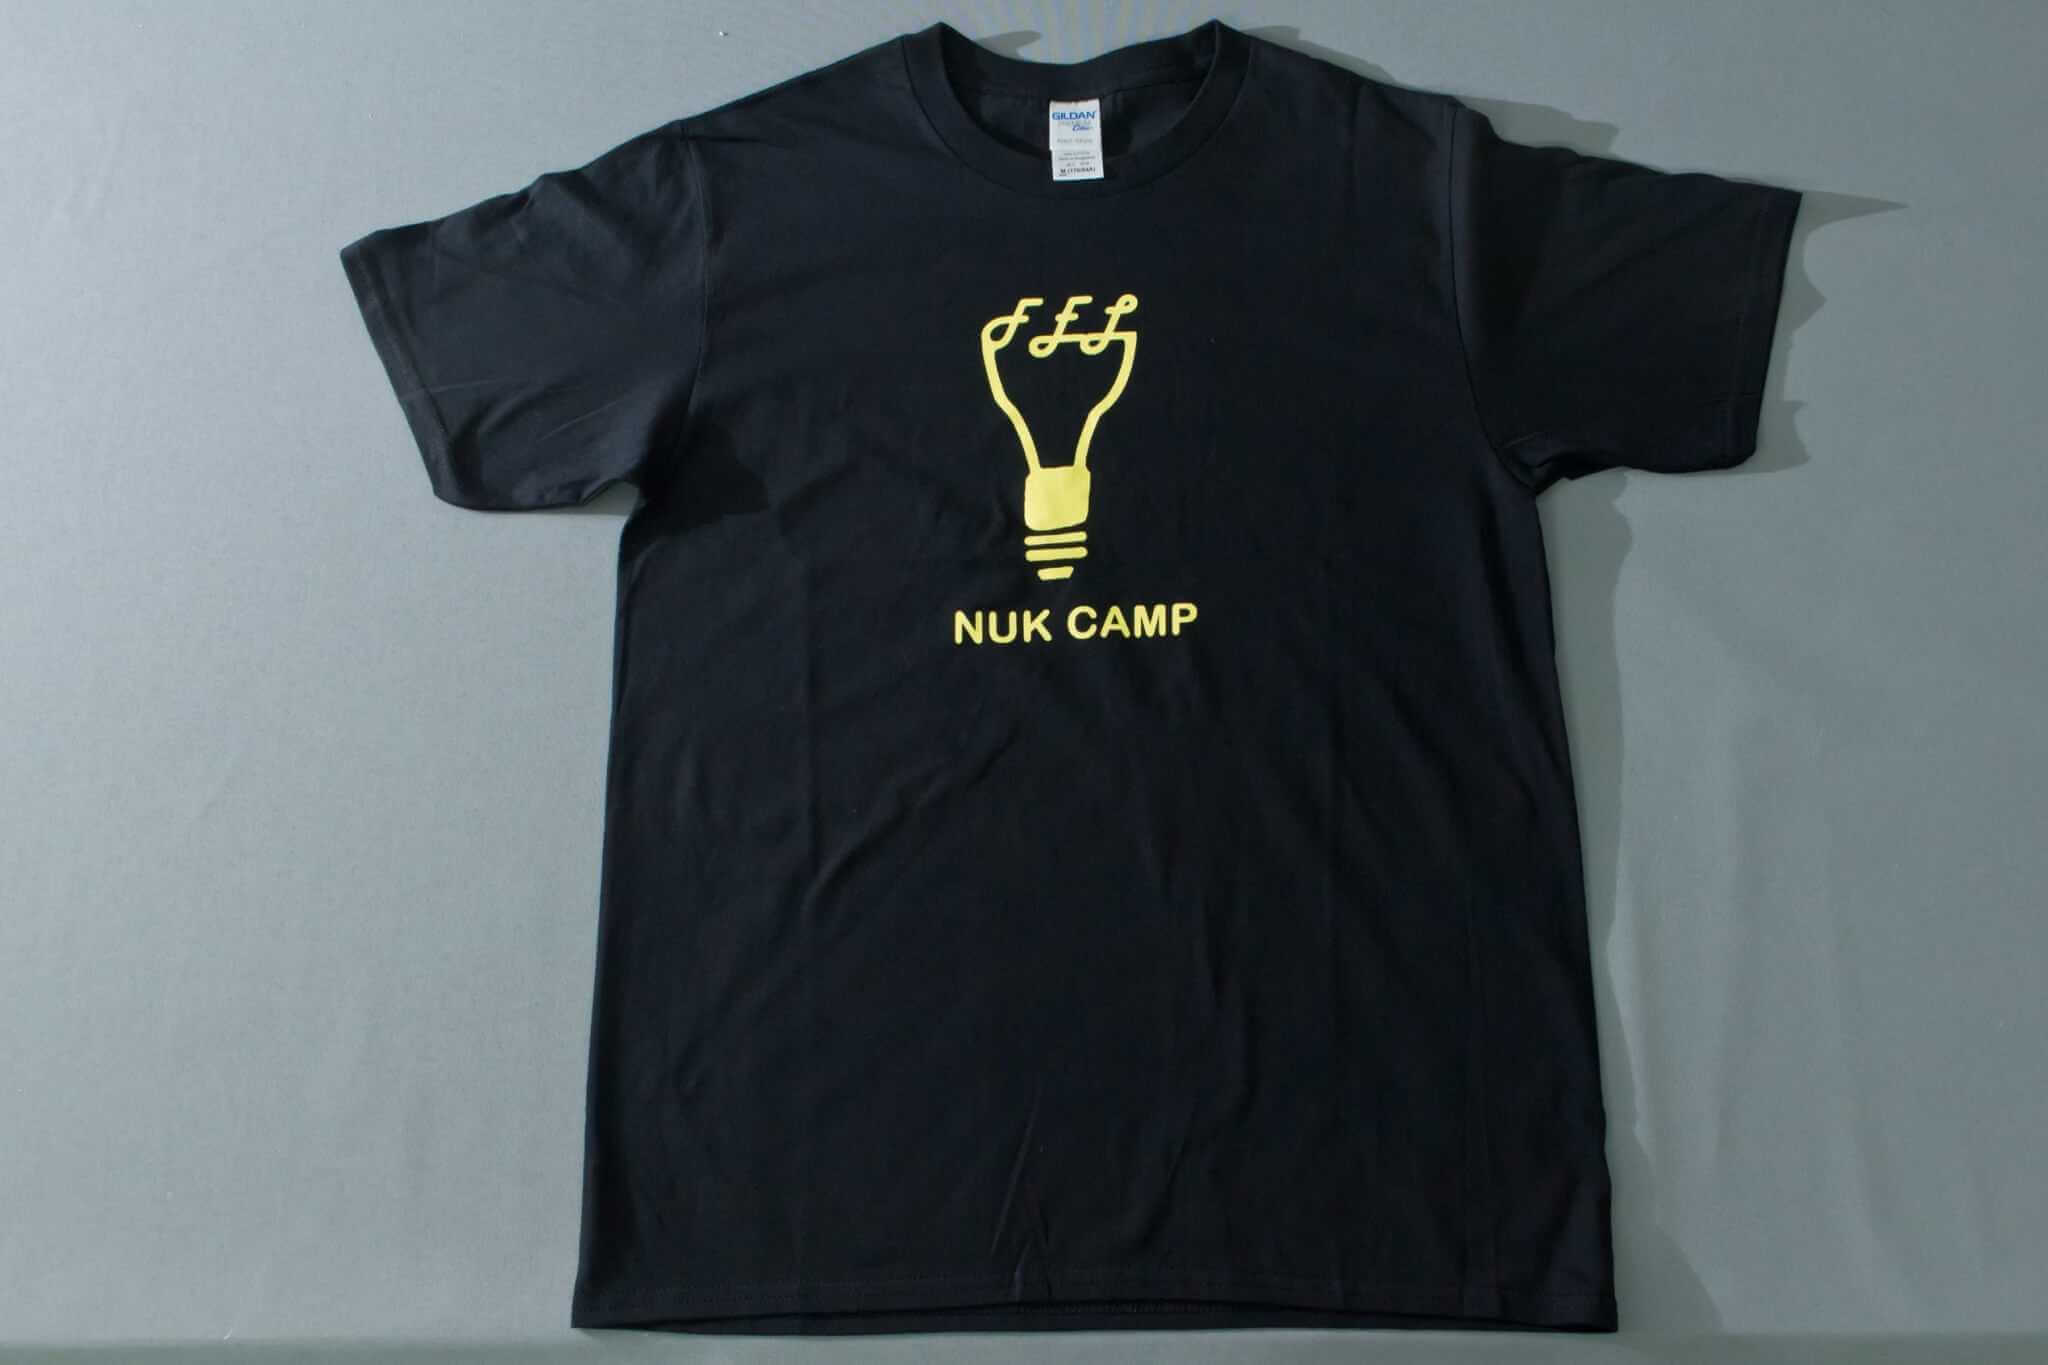 客製化T恤- NUK CAMP 客製T恤的第1張圖(客製化公司制服、班服製作、團體服製作等示意或作品圖)